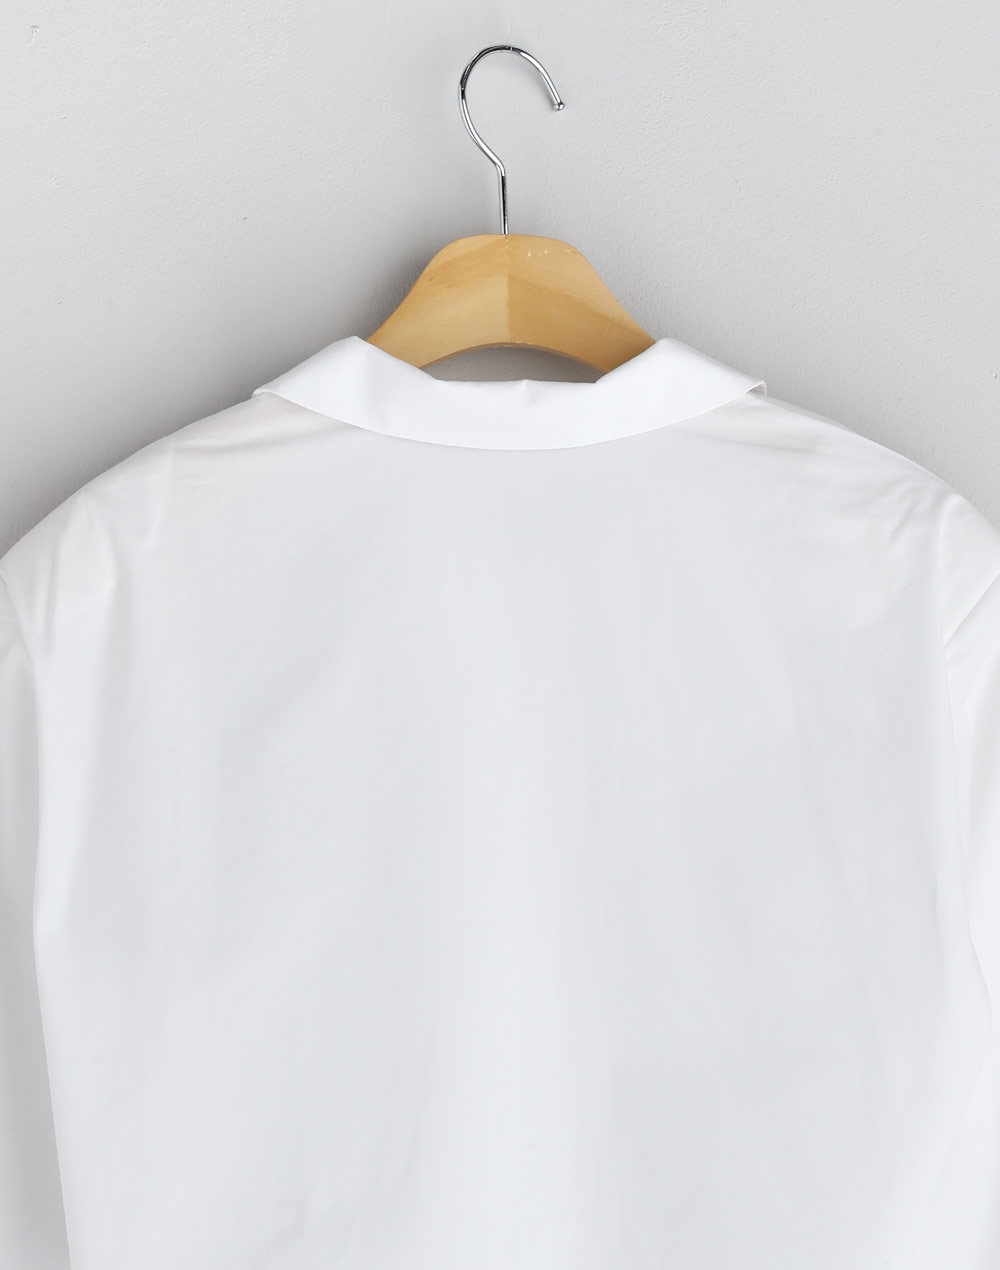 Cropped shirt・p279515（ブラウス/シャツ）| mi0306chi | 東京ガールズマーケット